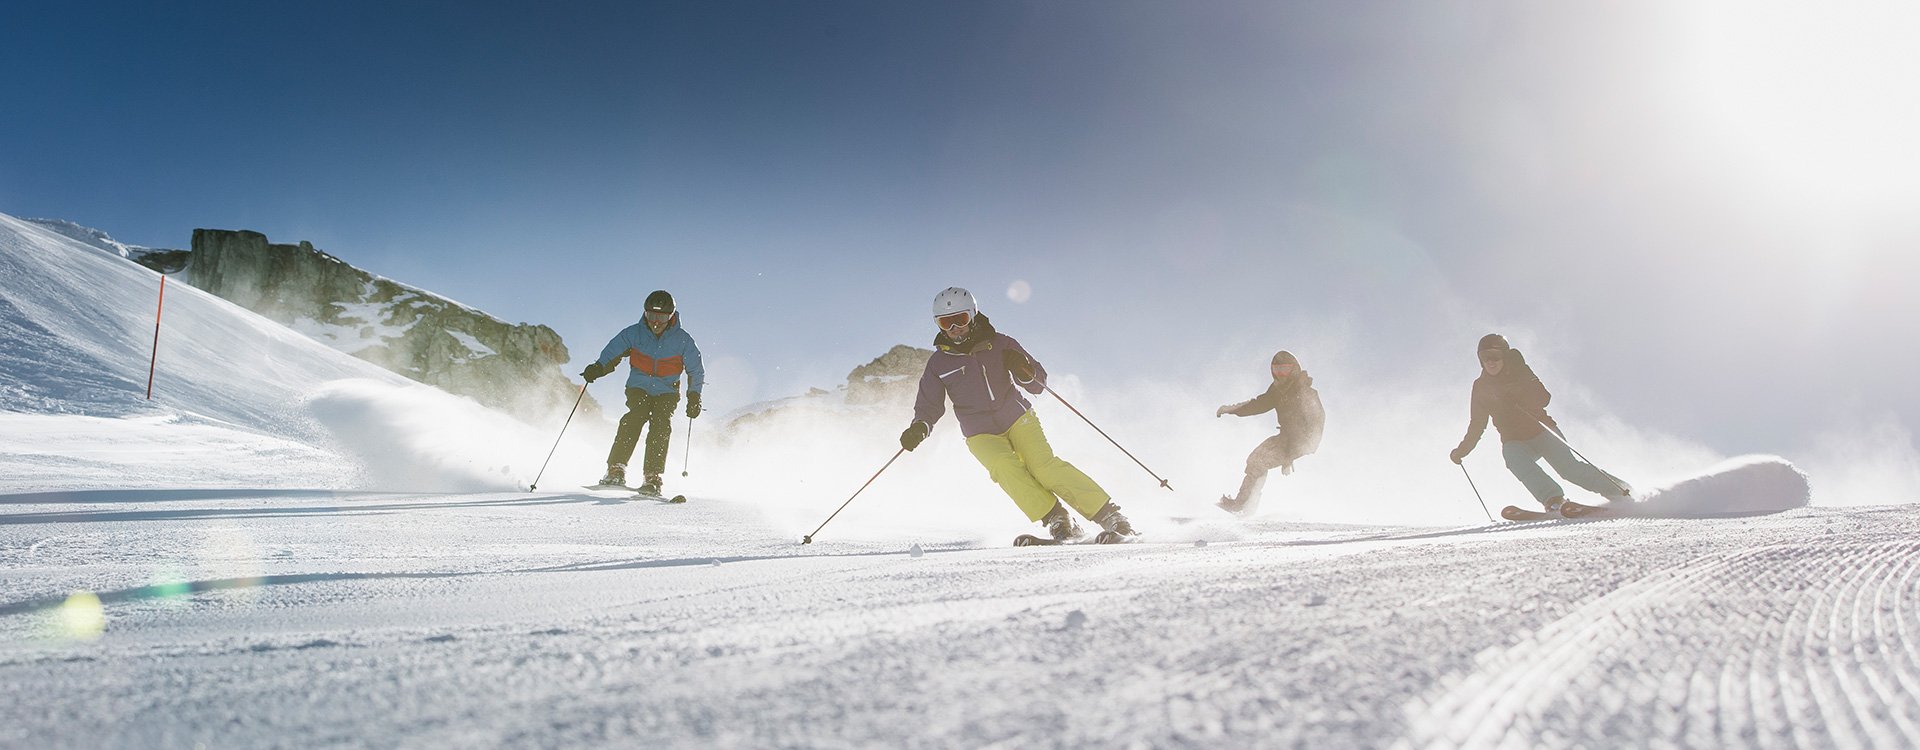 Eine Gruppe Erwachsener am Skie und Snowboard fahren.